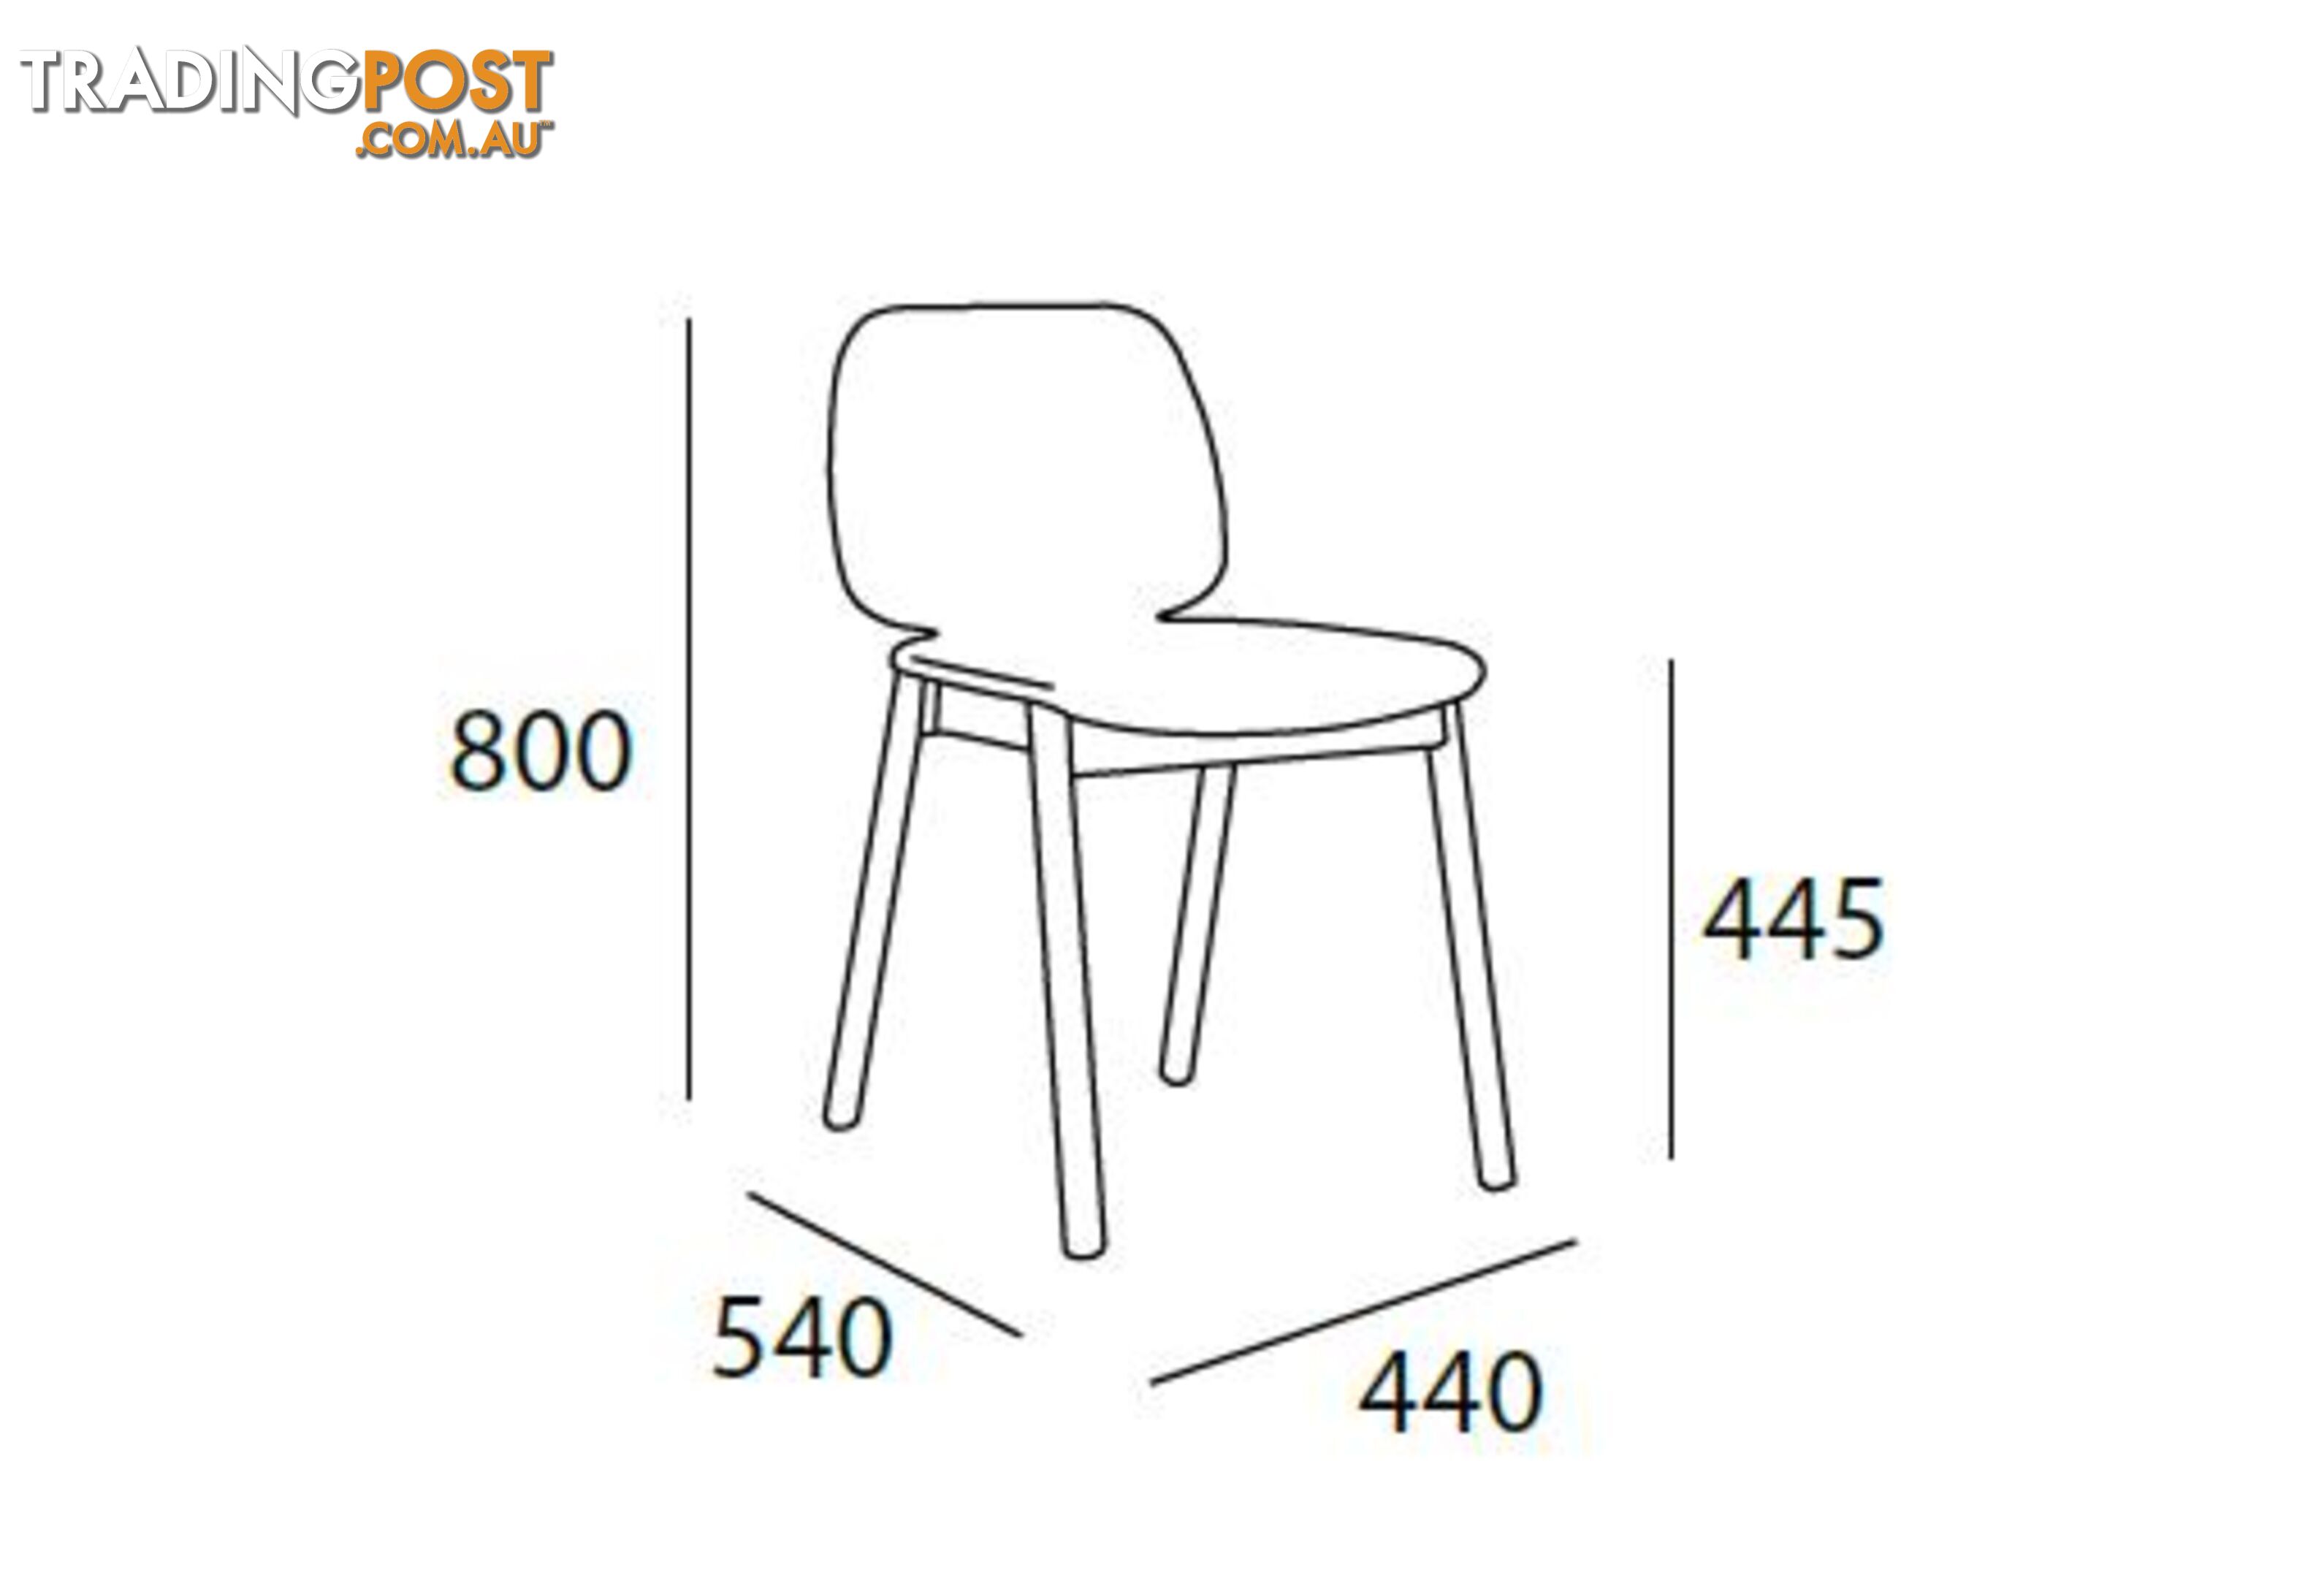 MISSIE Dining Chair - Black + Dark Grey - 241029 - 9334719007946